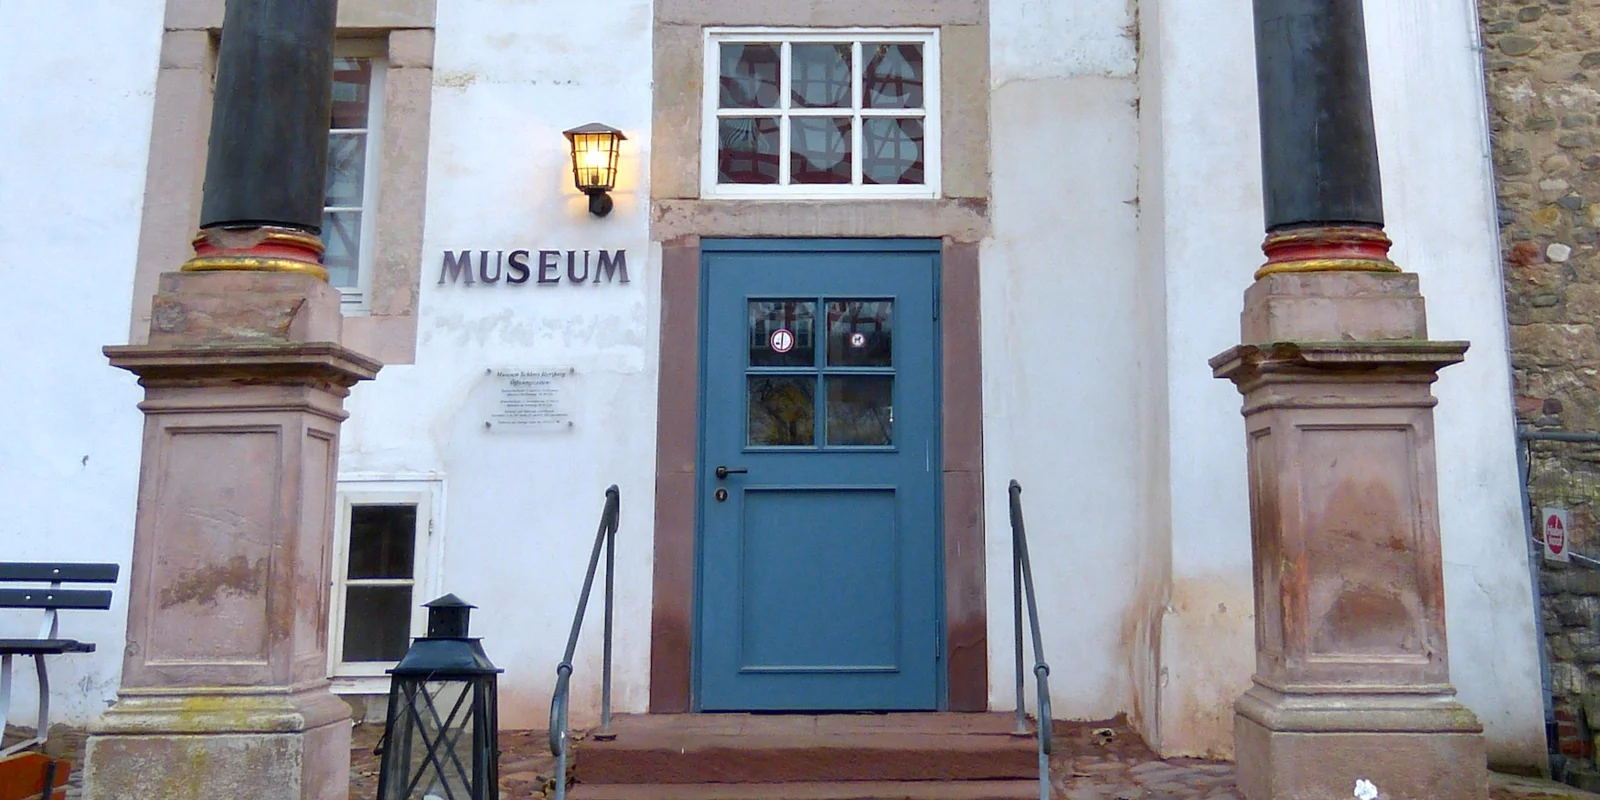 Einige Stufen führen zwischen zwei Säulen hindurch zu einer blauen Tür, neben der das Wort Museum an der Wand steht